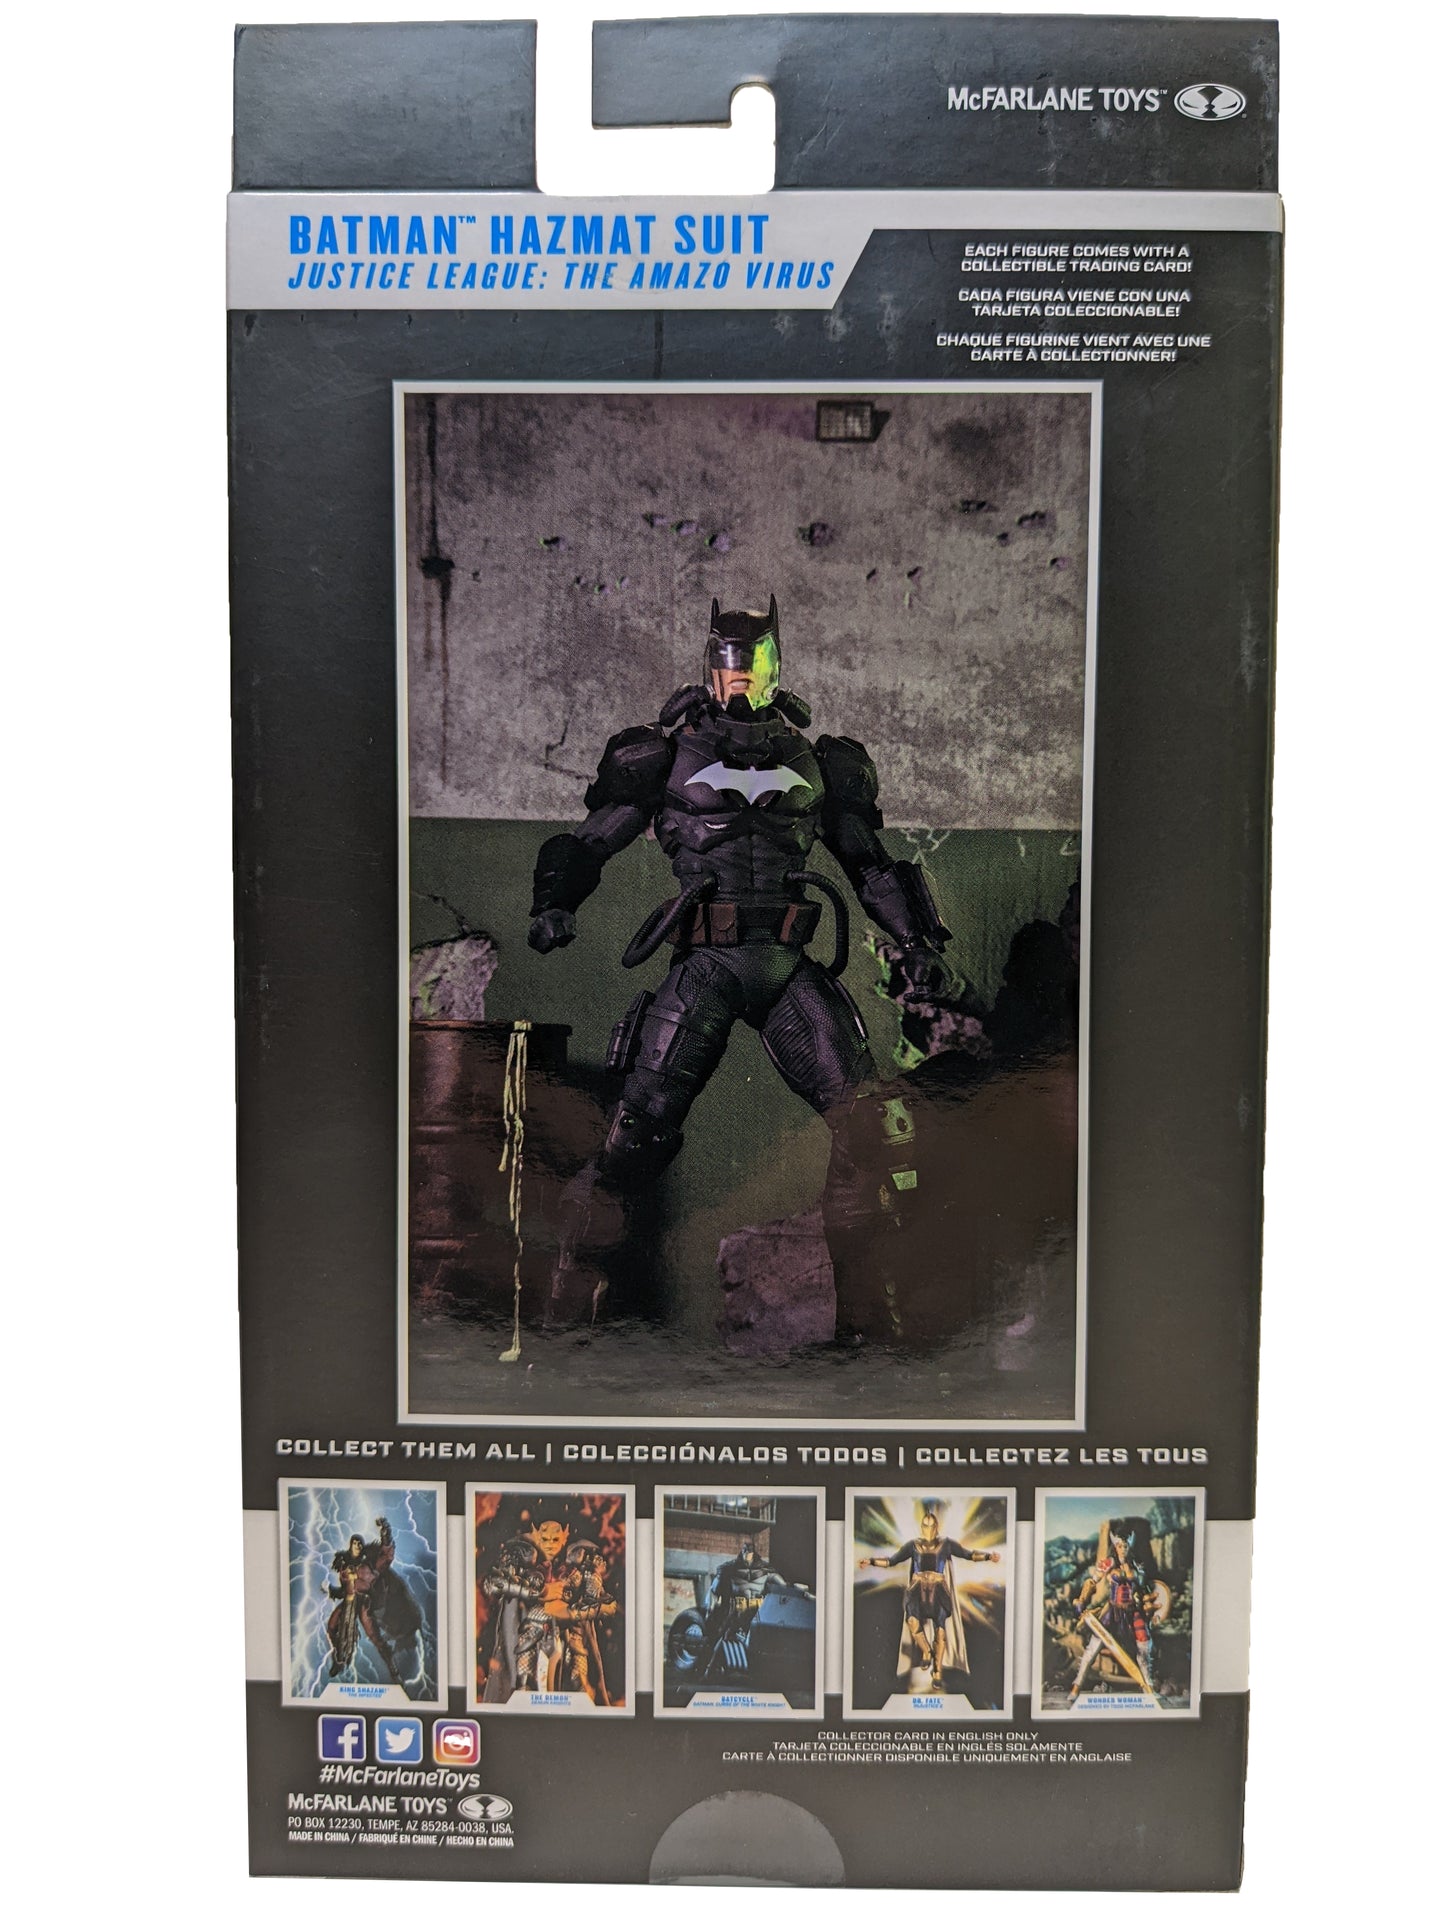 Dc Multiverse - Batman Hazmat Suit